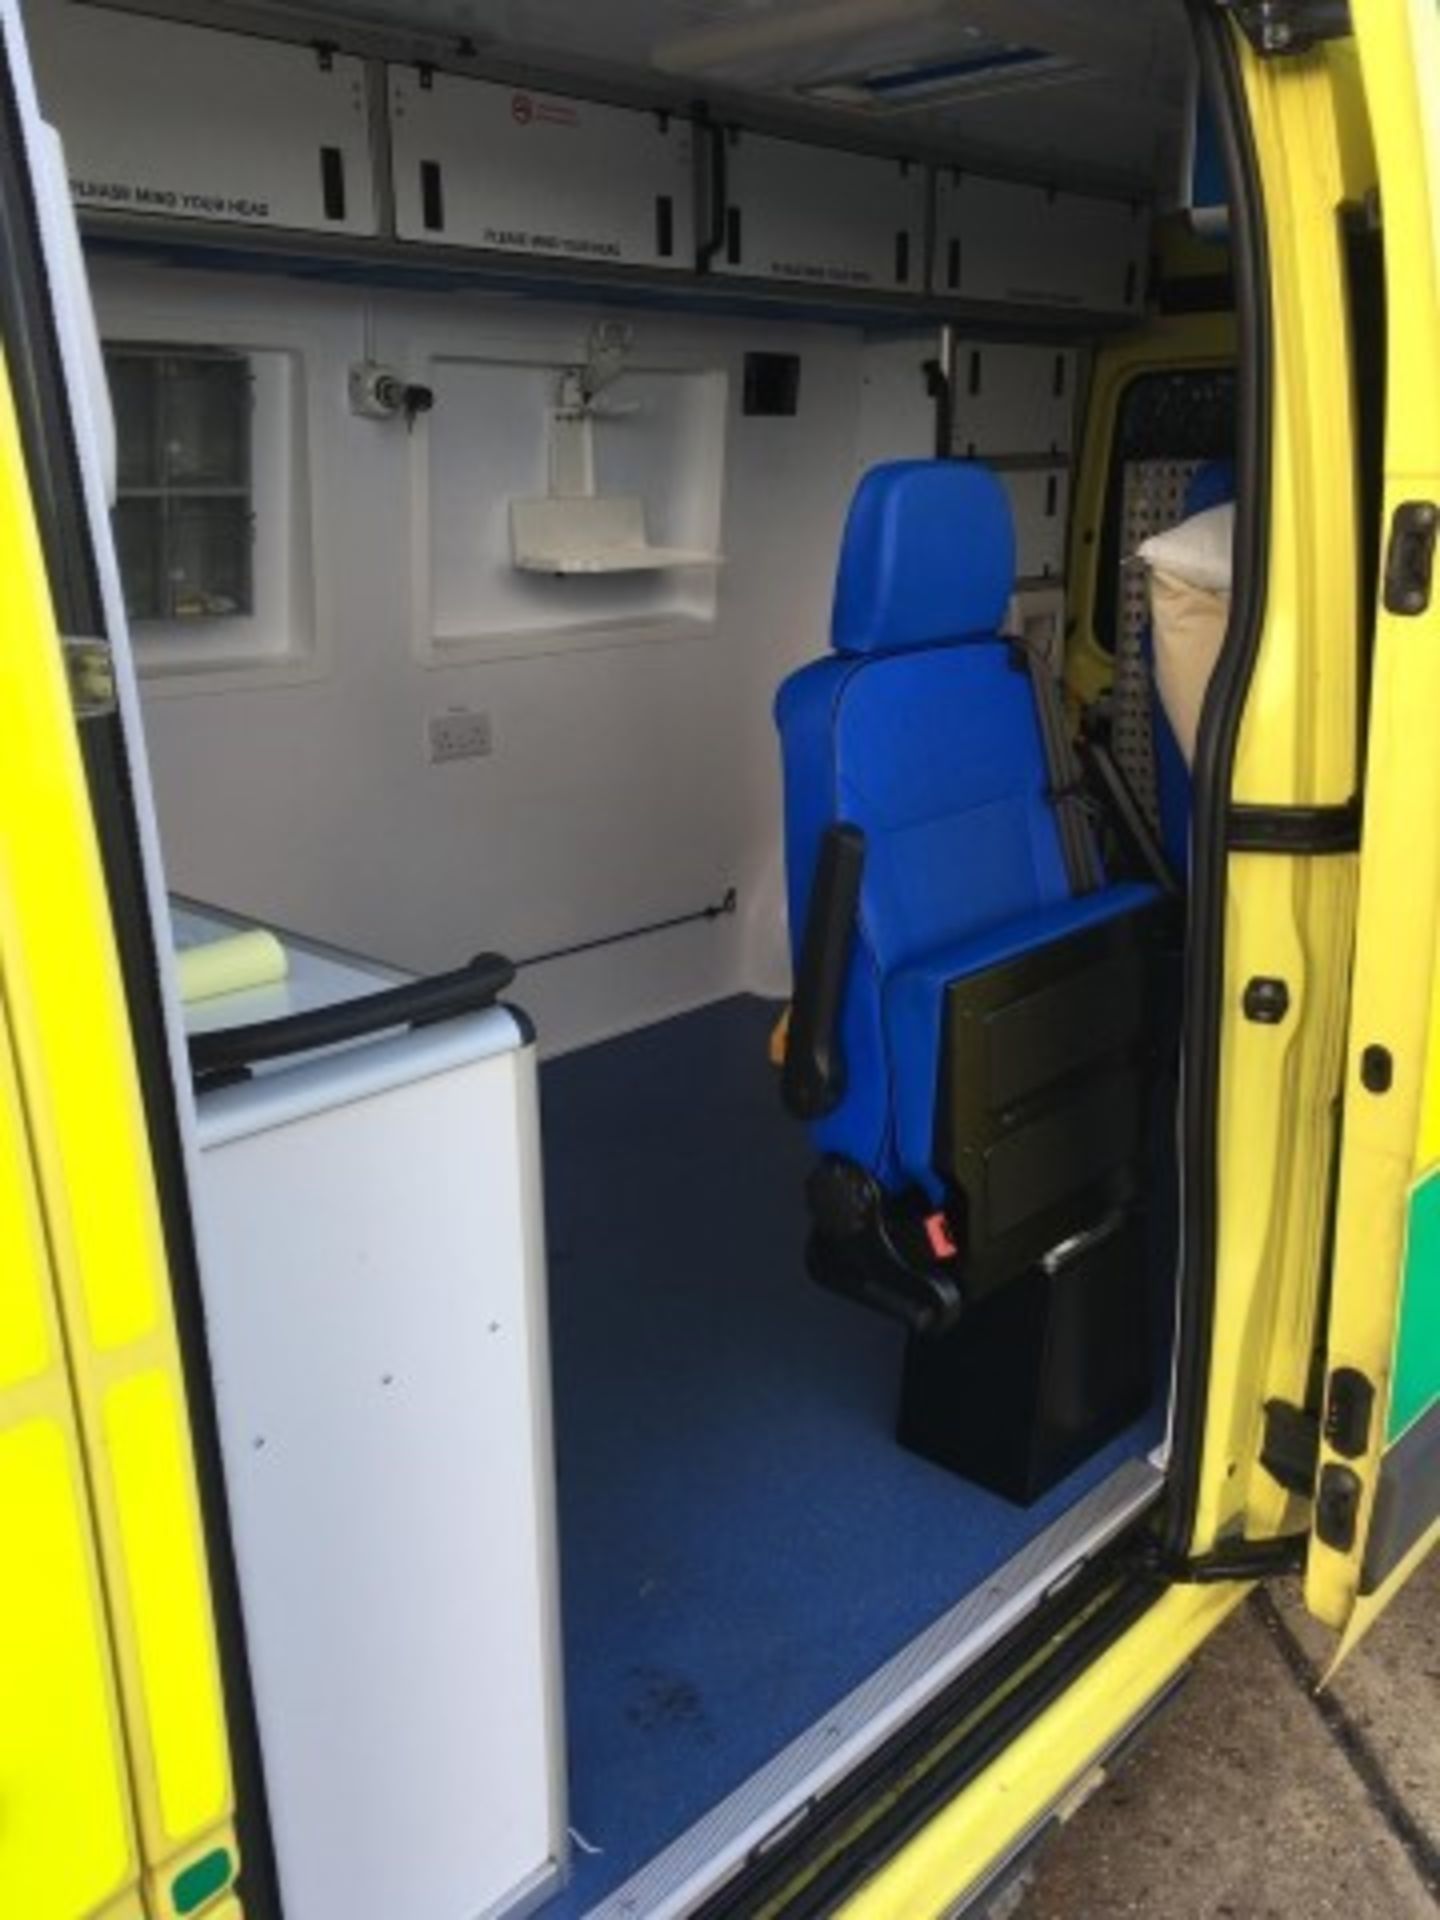 Renault Master LM145 Euro 6 Ambulance (2017) - Image 5 of 15